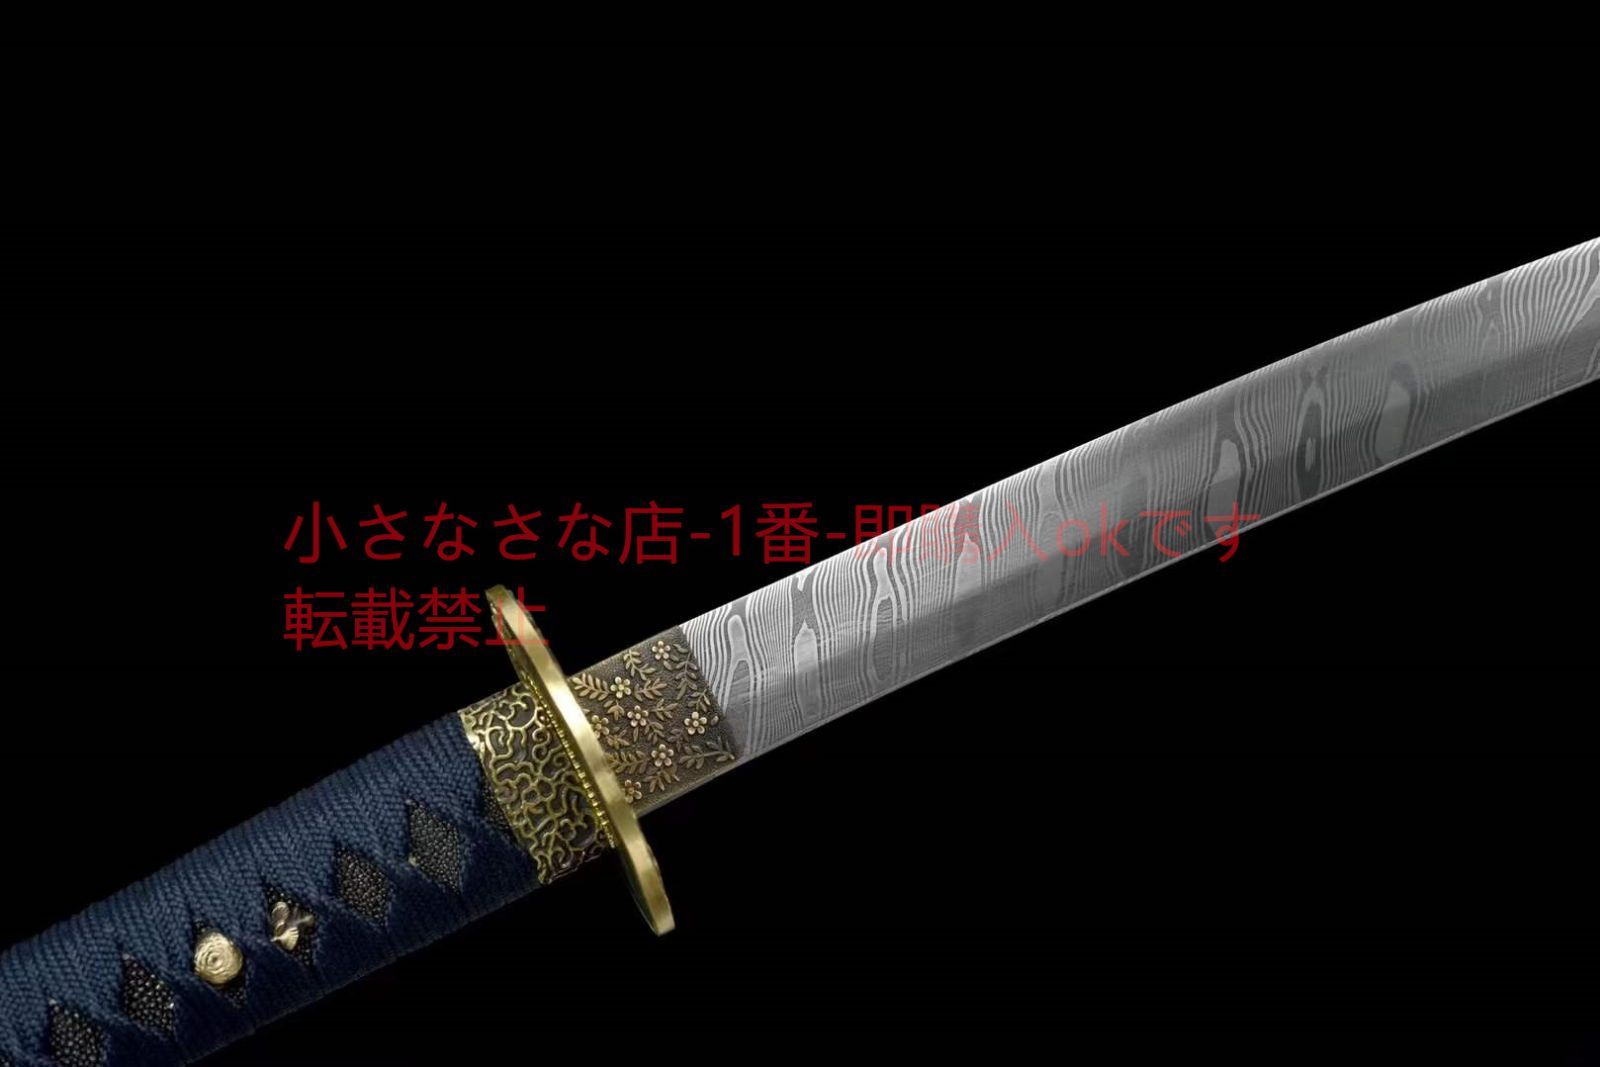 自製鋼武士刀【ミモザ】武具 刀装具 日本刀 模造刀 居合刀 - メルカリ